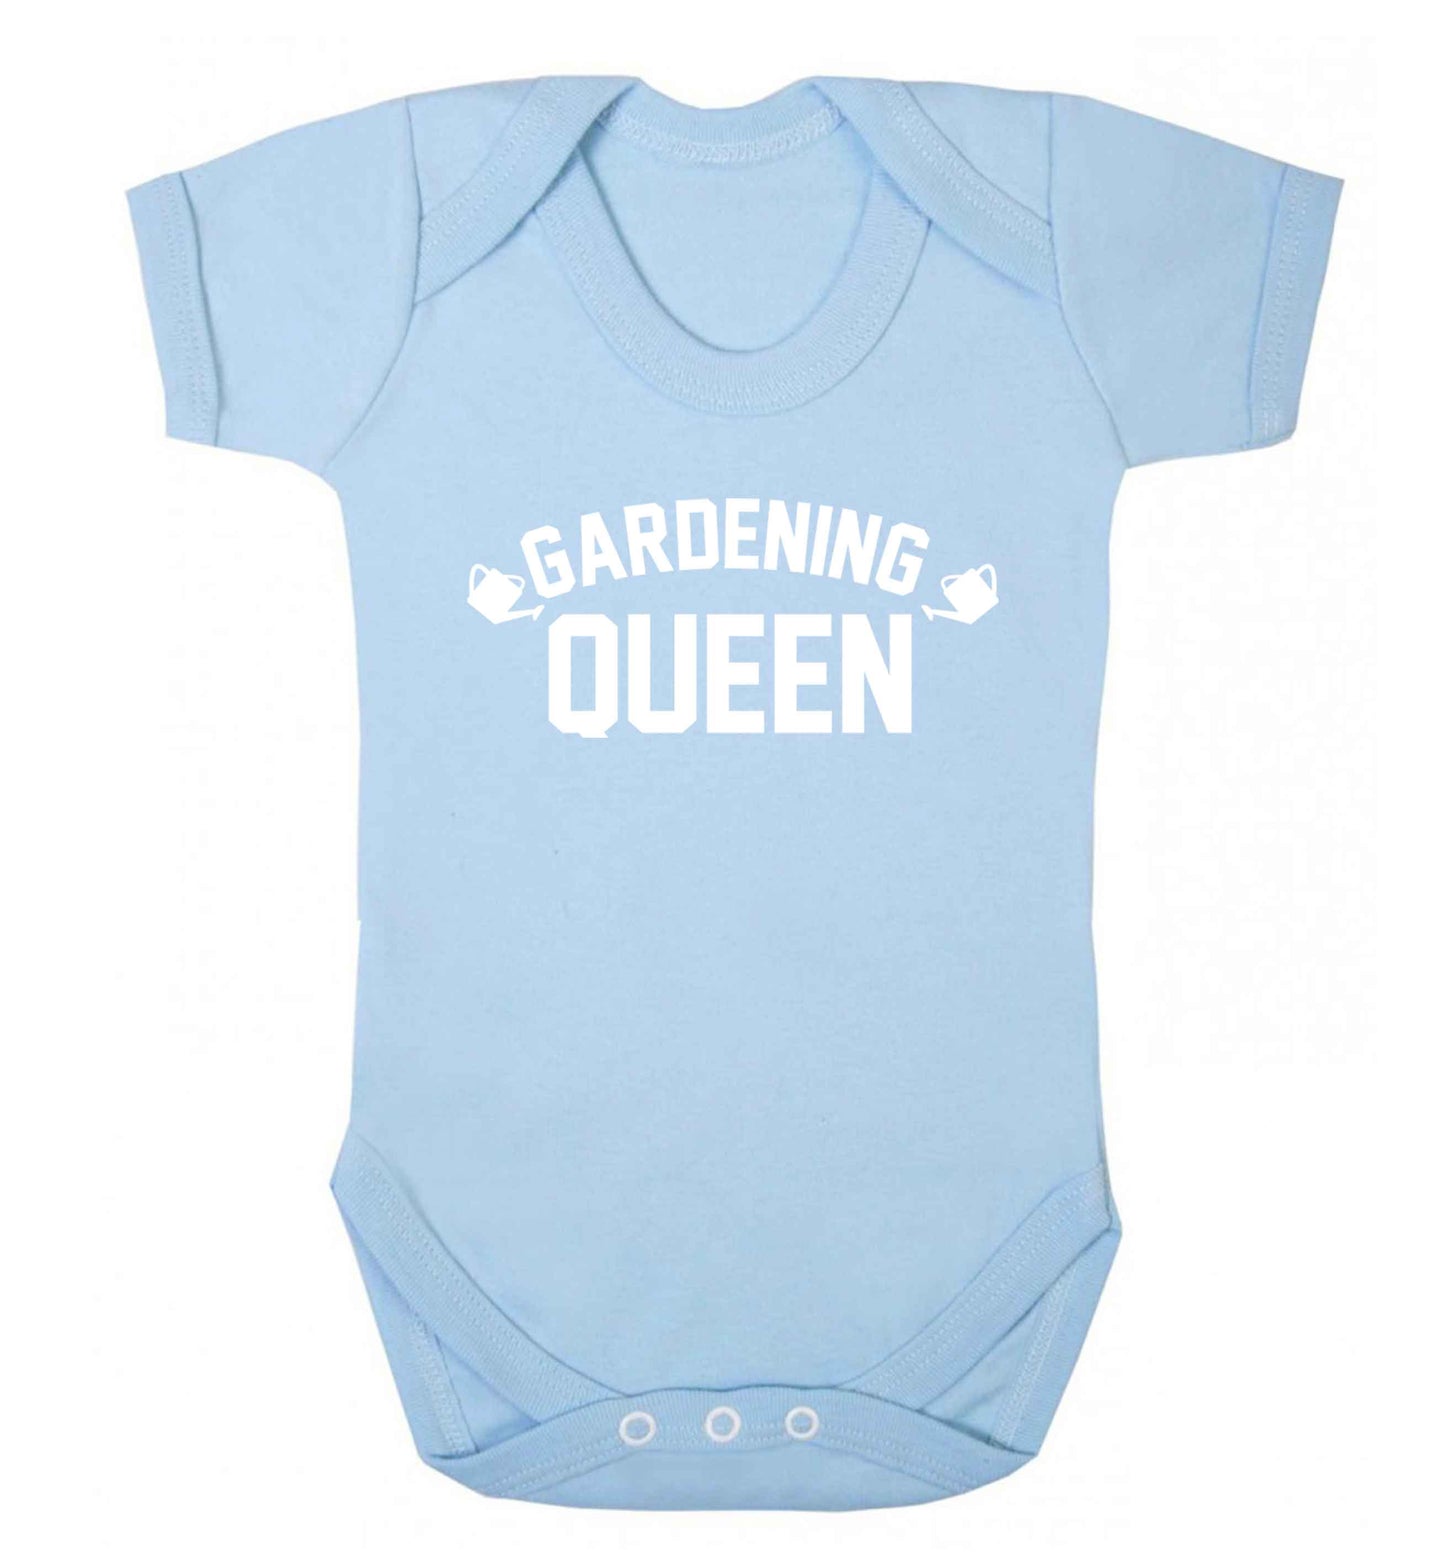 Gardening queen Baby Vest pale blue 18-24 months